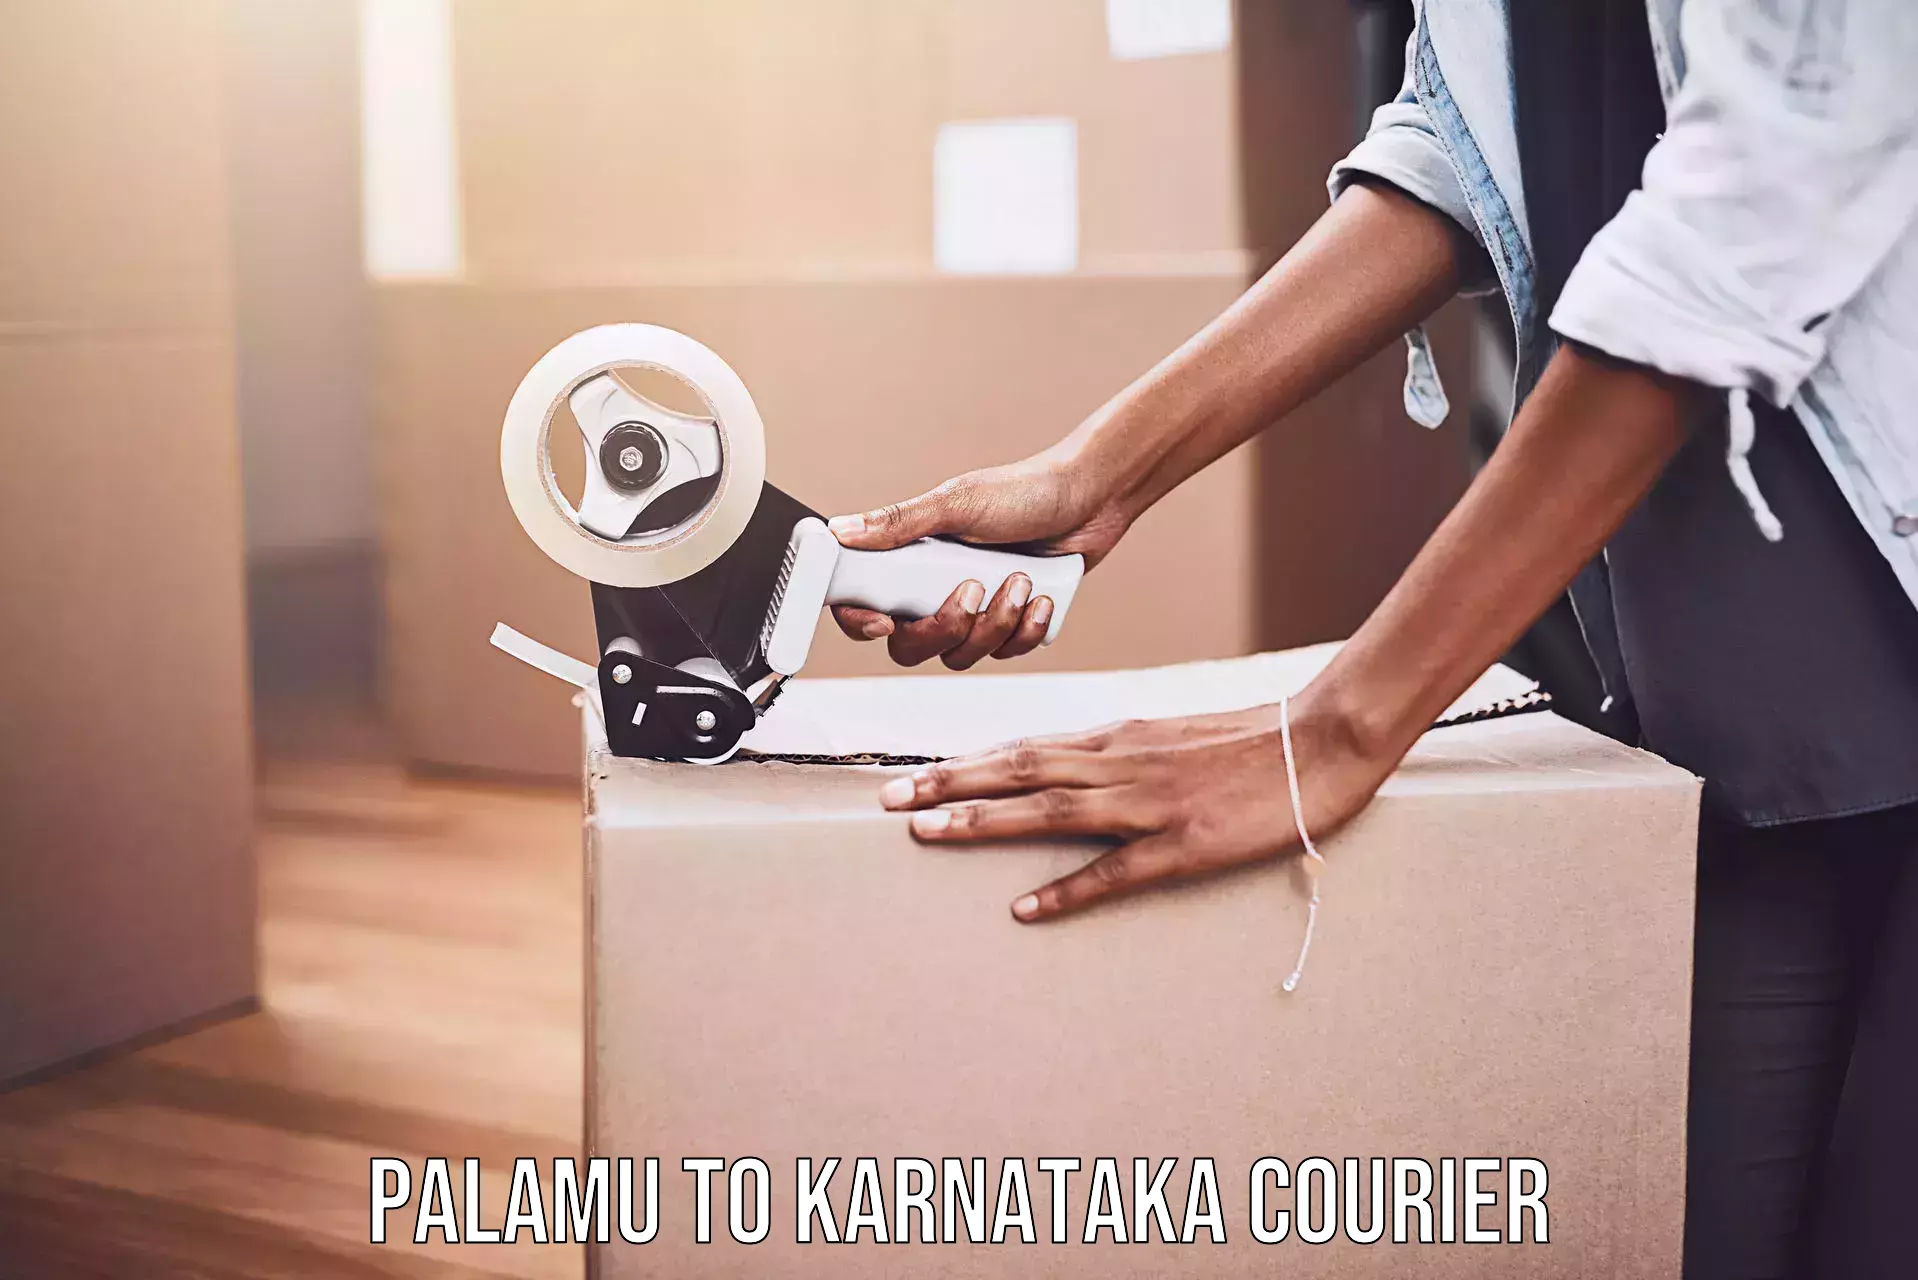 Express logistics providers Palamu to Karnataka